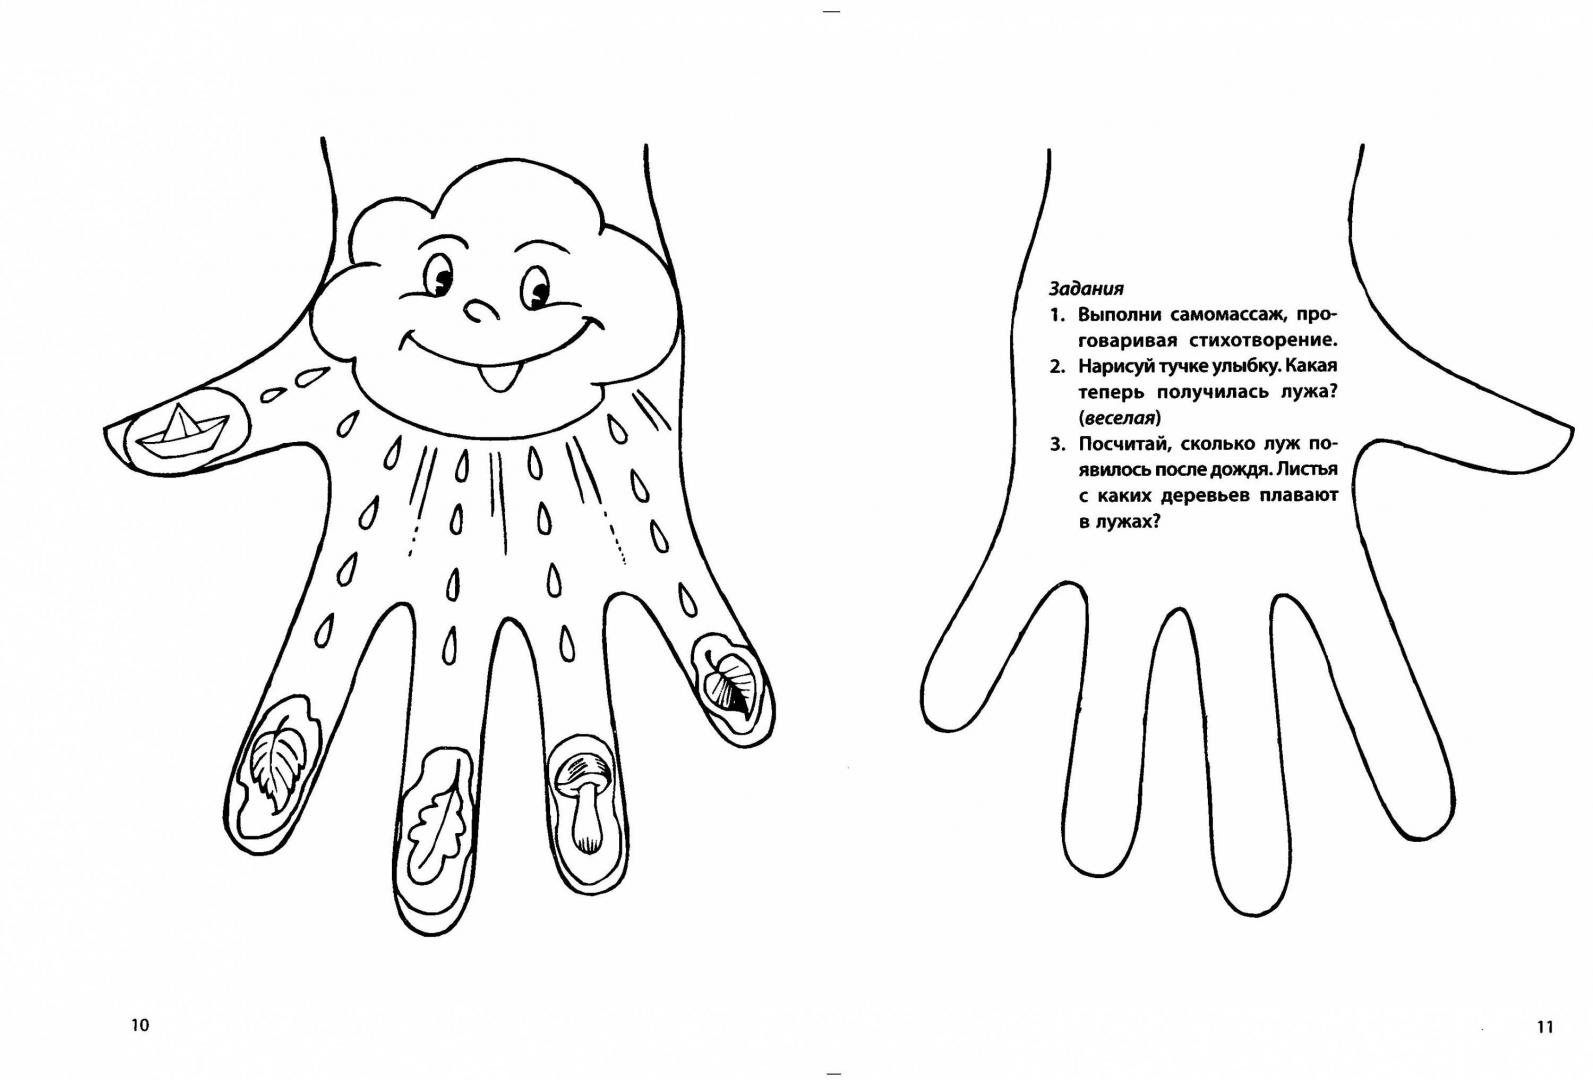 Пальчиковая гимнастика про космос для дошкольников. Самомассаж рук для дошкольников. Самомассаж пальчиков рук для детей. Массаж для пальчиков для развития мелкой моторики. Самомассаж пальцев рук для дошкольников.